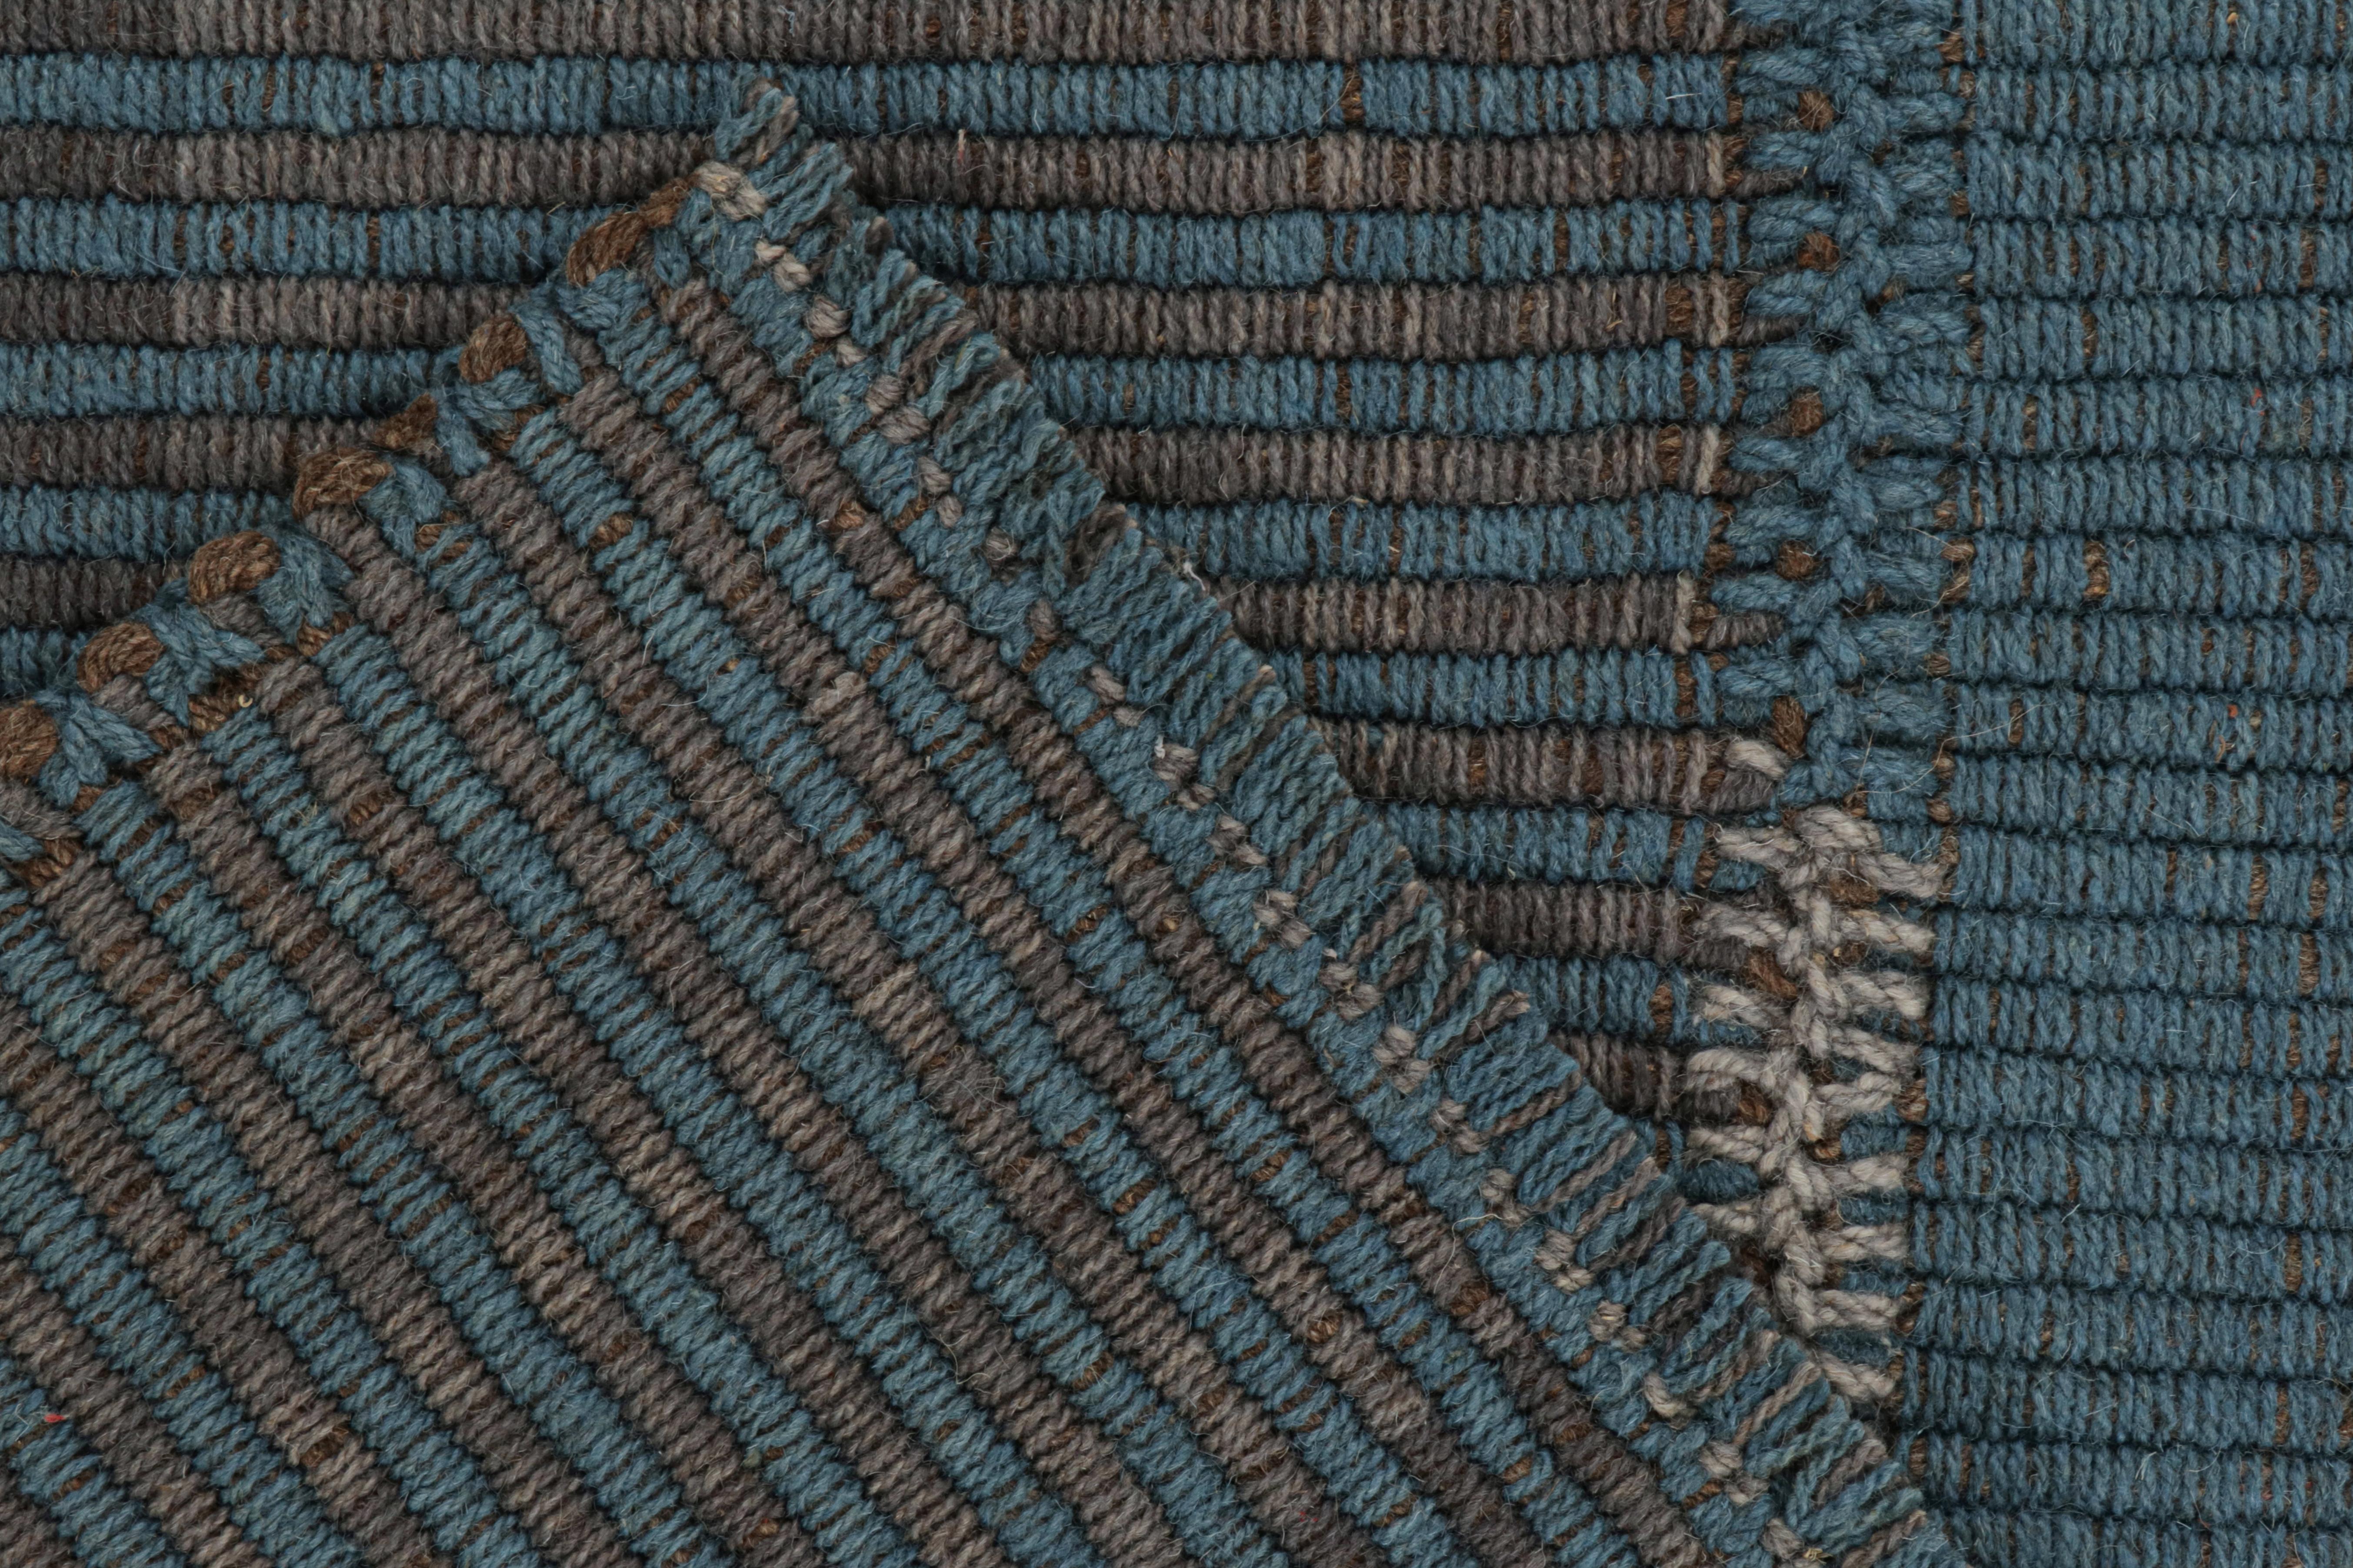 XXIe siècle et contemporain Rug & Kilim's Contemporary Kilim in Blue and Gray Stripes with Brown Accents (Kilim contemporain à rayures bleues et grises avec des accents bruns) en vente